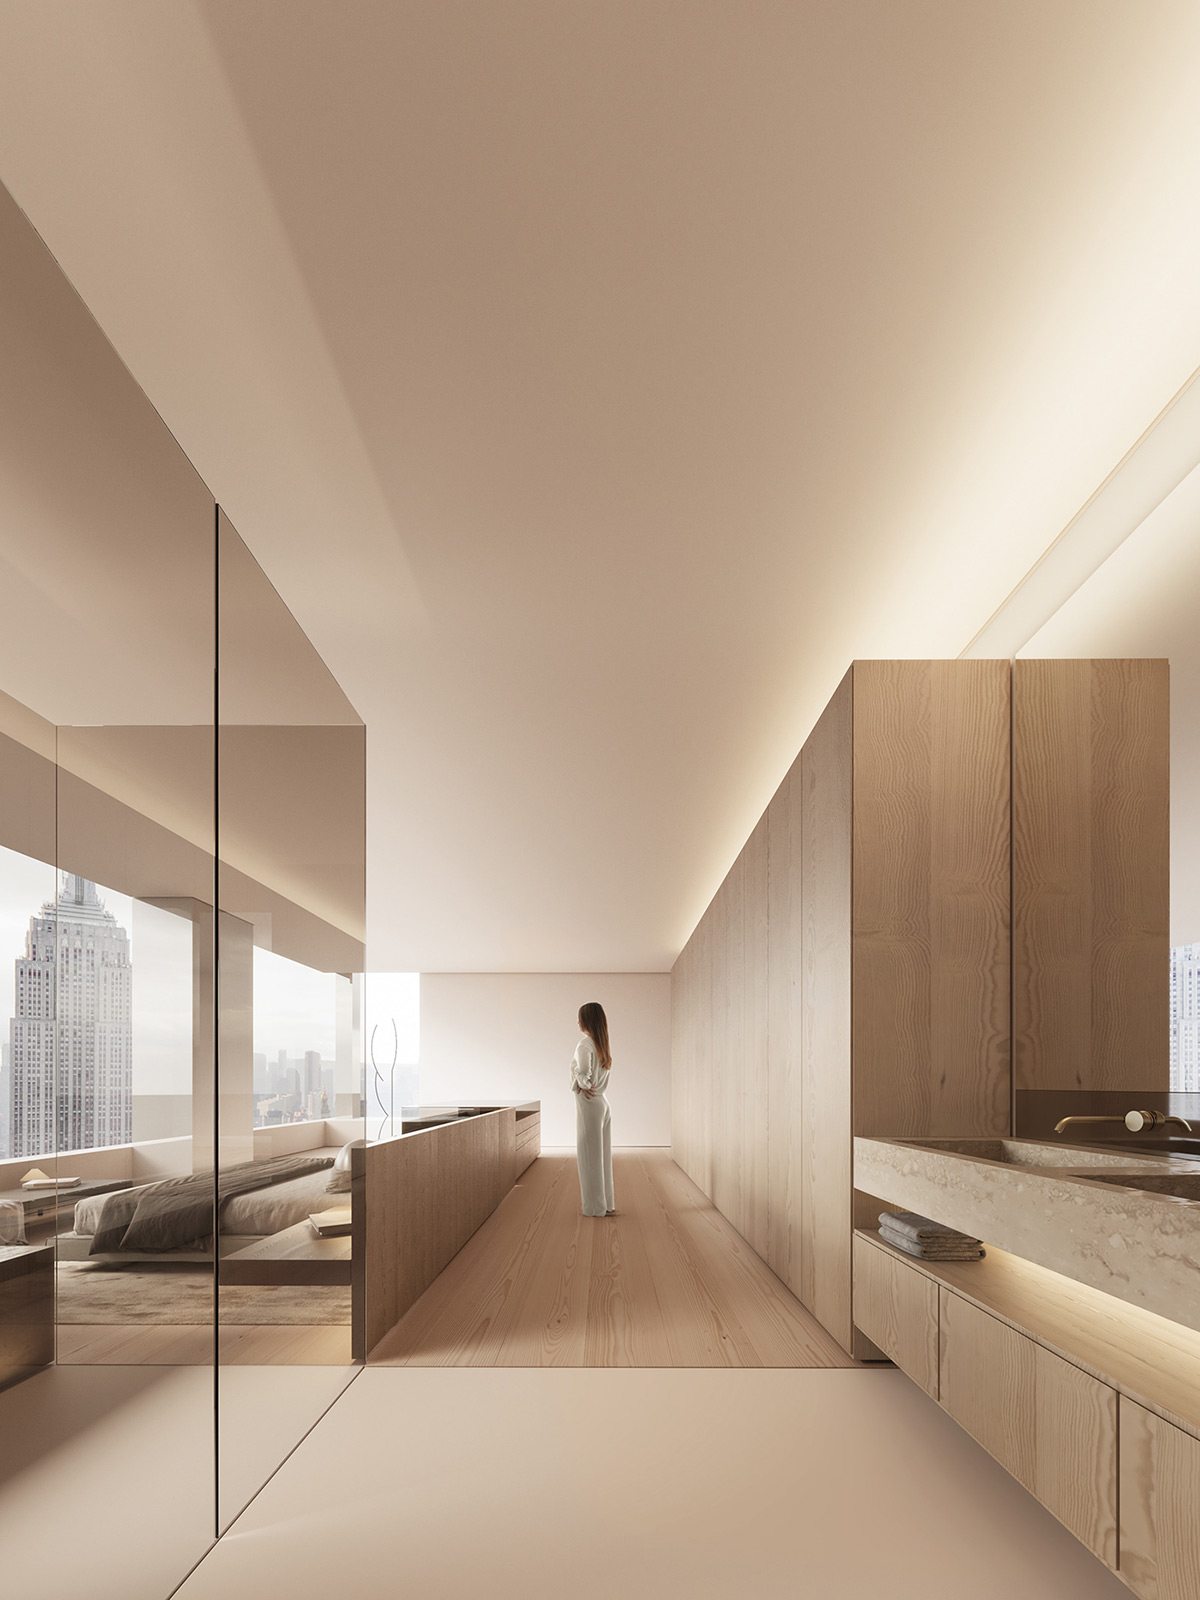 複式公寓,住宅設計案例,頂層公寓設計,極簡風格,Fran Silvestre Arquitectos,極簡主義